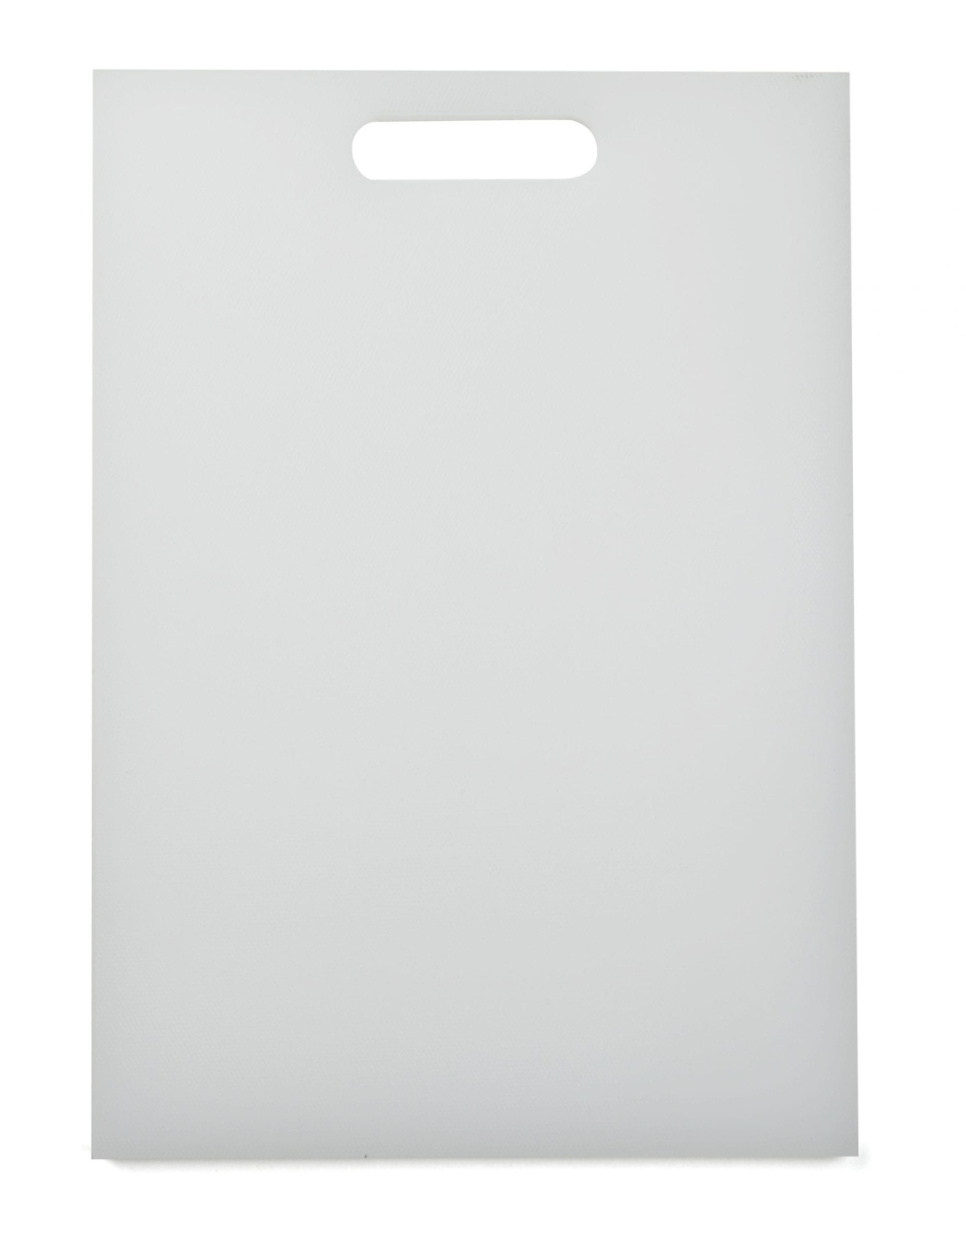 Deska do krojenia, biała, 35 x 26 cm - Exxent w grupie Gotowanie / Przybory kuchenne / Deski do krojenia w The Kitchen Lab (1071-10194)